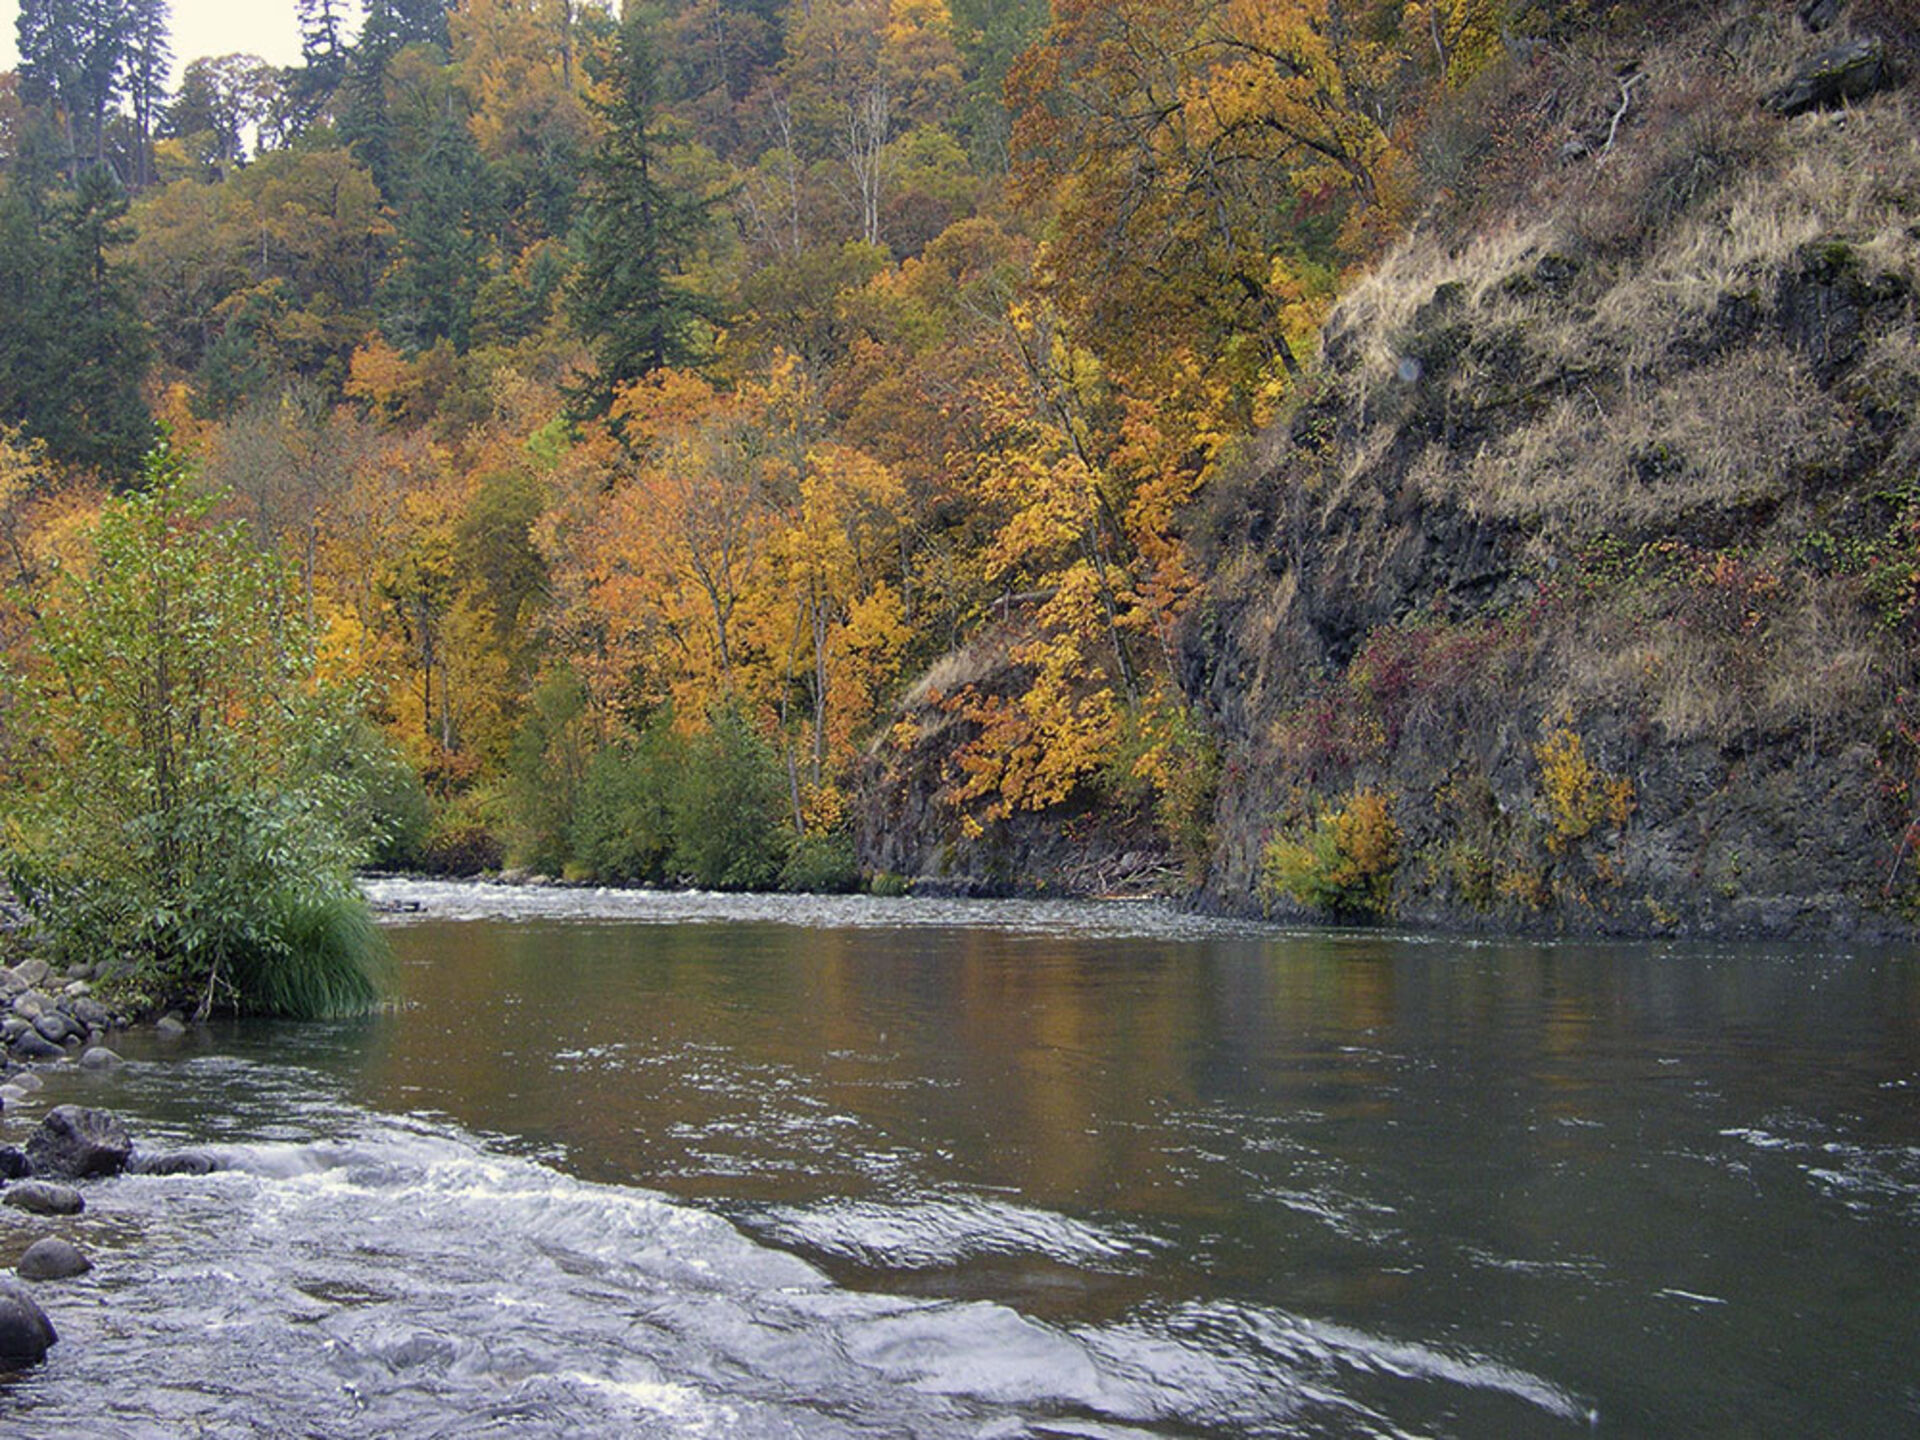  Der Hood River in Oregon, USA ist ein bekannter Steelhead-Fluss.  